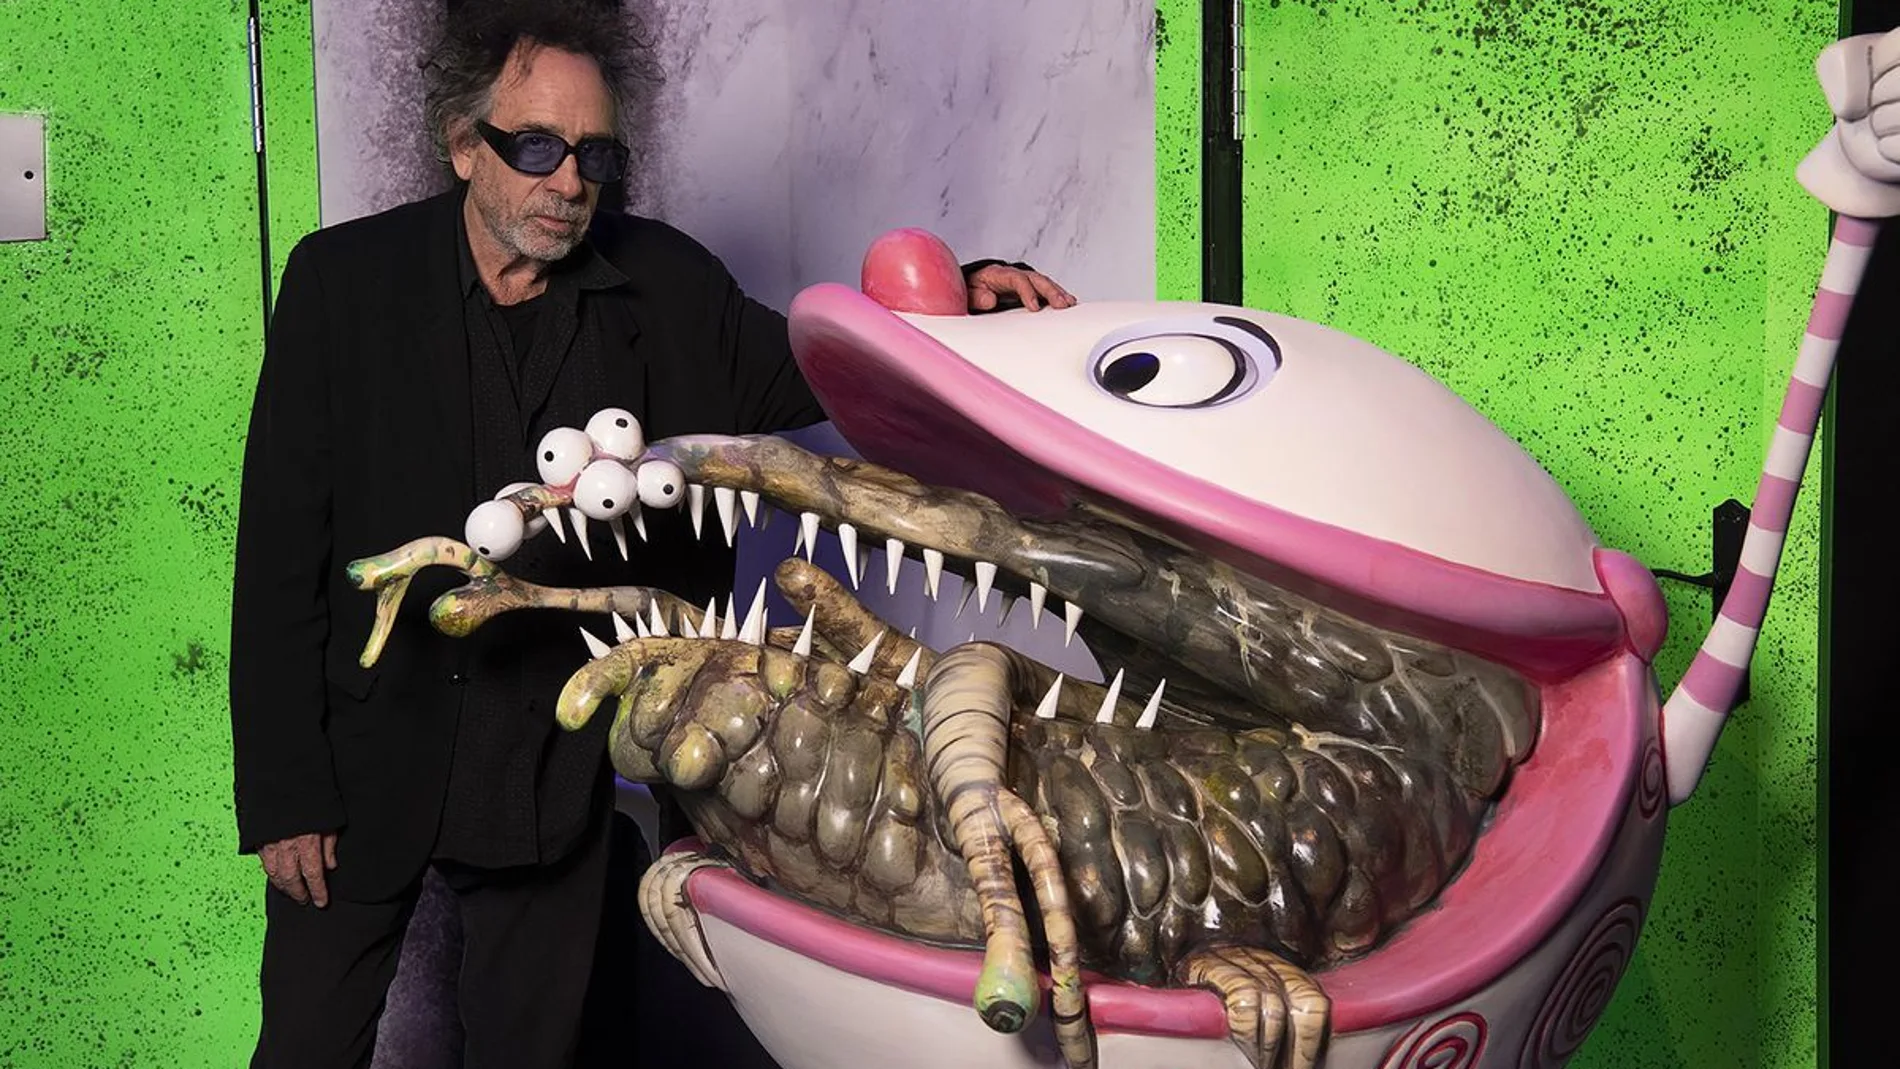 El cineasta Tim Burton posa junto a uno de sus bocetos exclusivos e inéditos presentes en la exposición